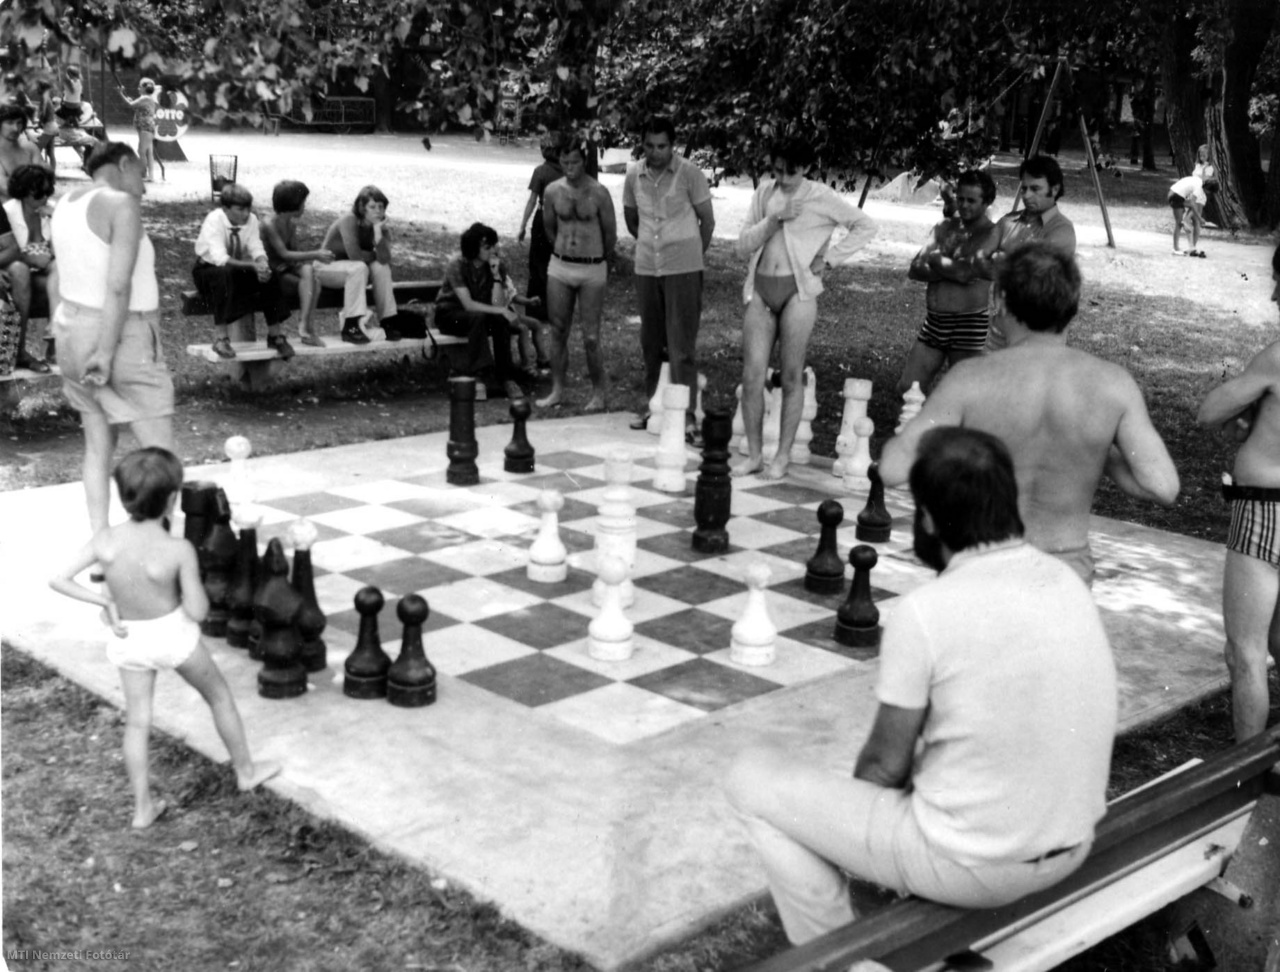 Siófok, 1975. augusztus 8. Nyaralók szórakoznak az óriássakkal